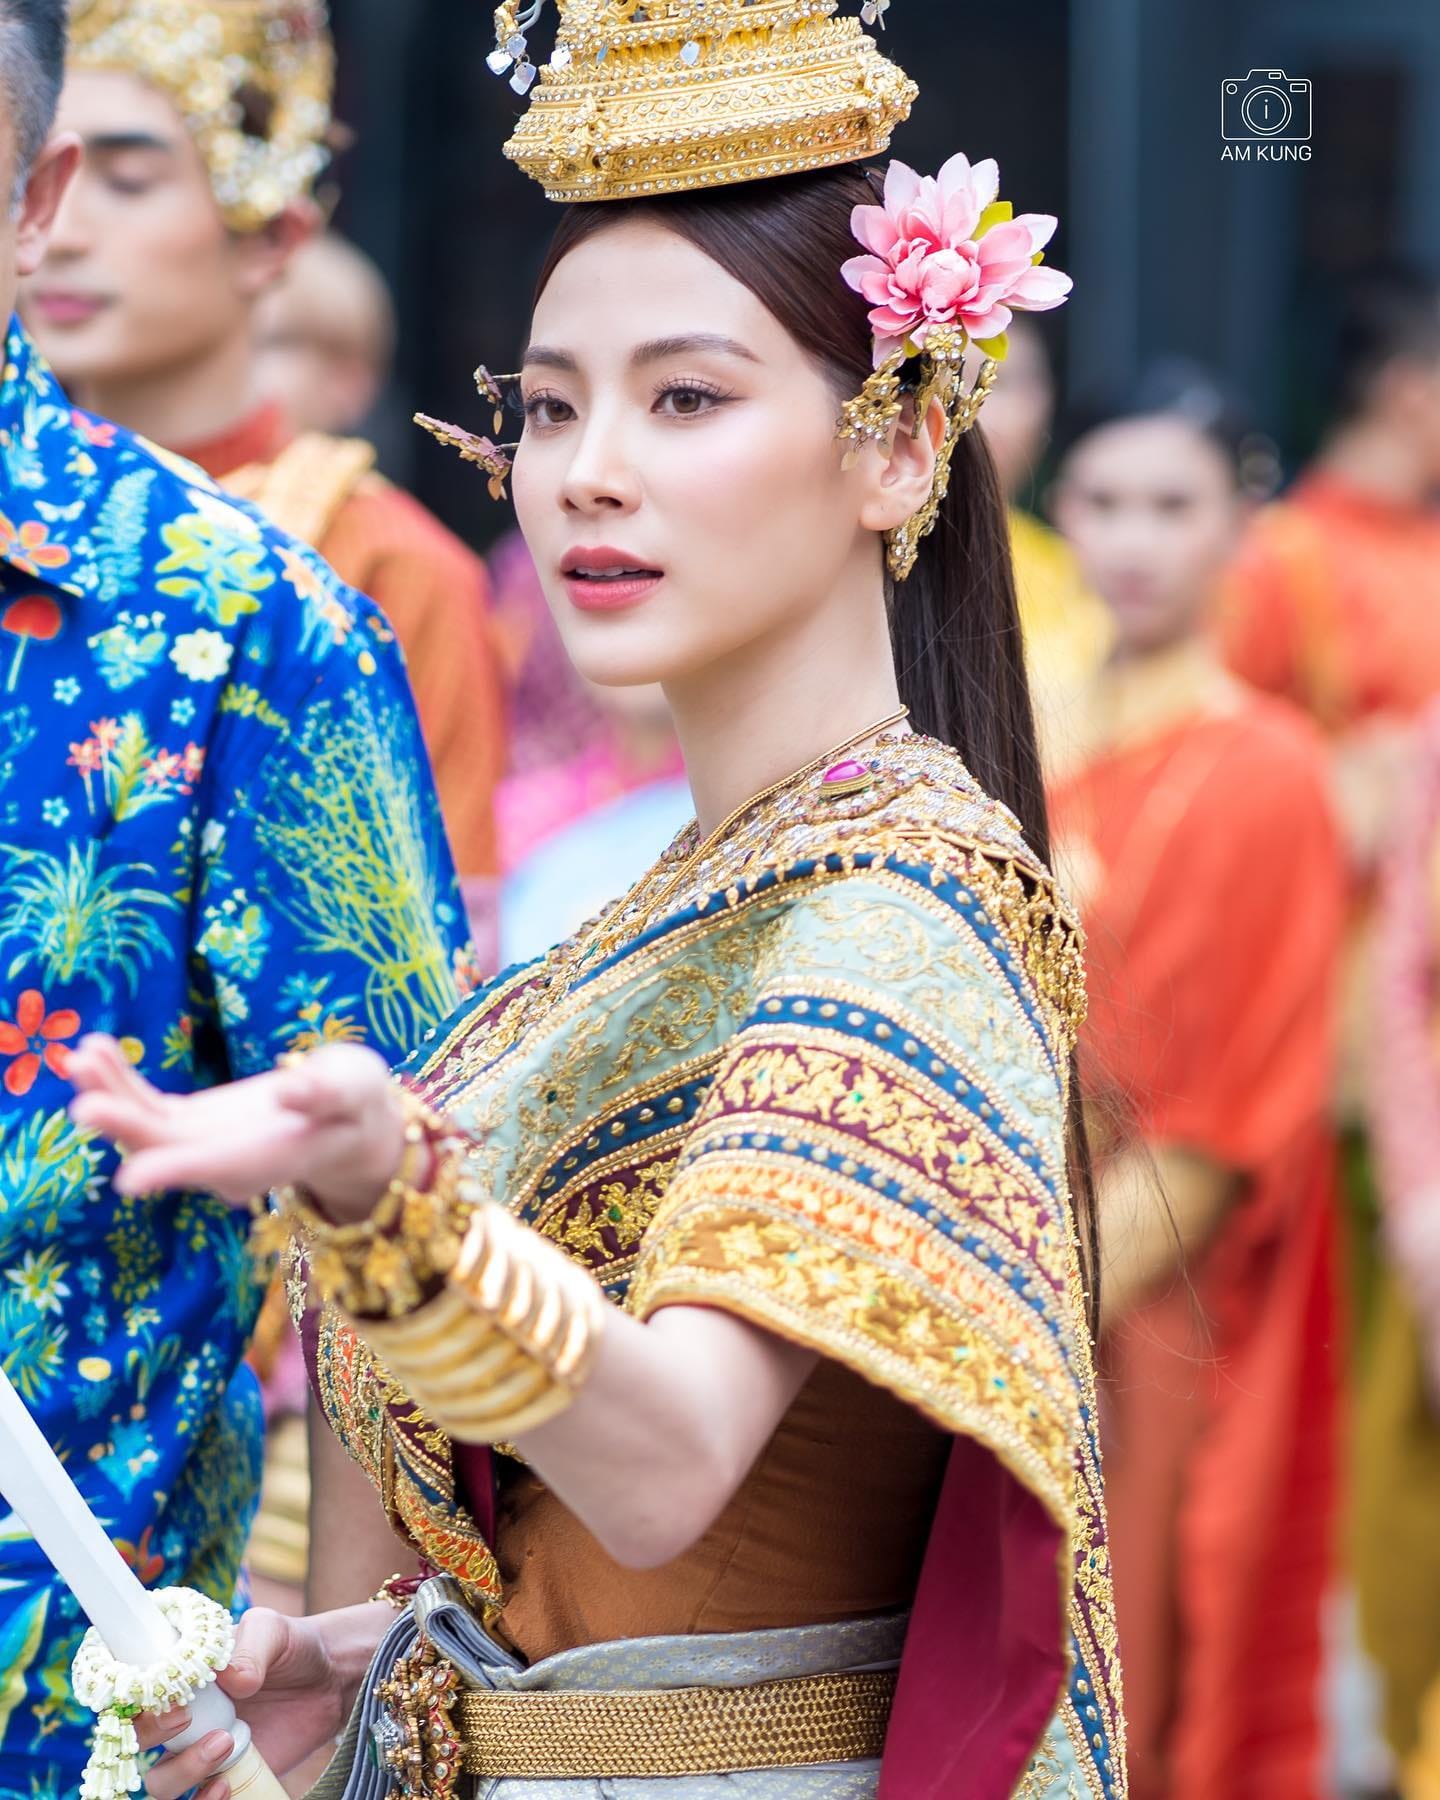 “Mỹ nhân Thái Lan” Baifern gây náo loạn với nhan sắc cực phẩm hóa thân thành “Nữ thần Songkran” 2023 - ảnh 6